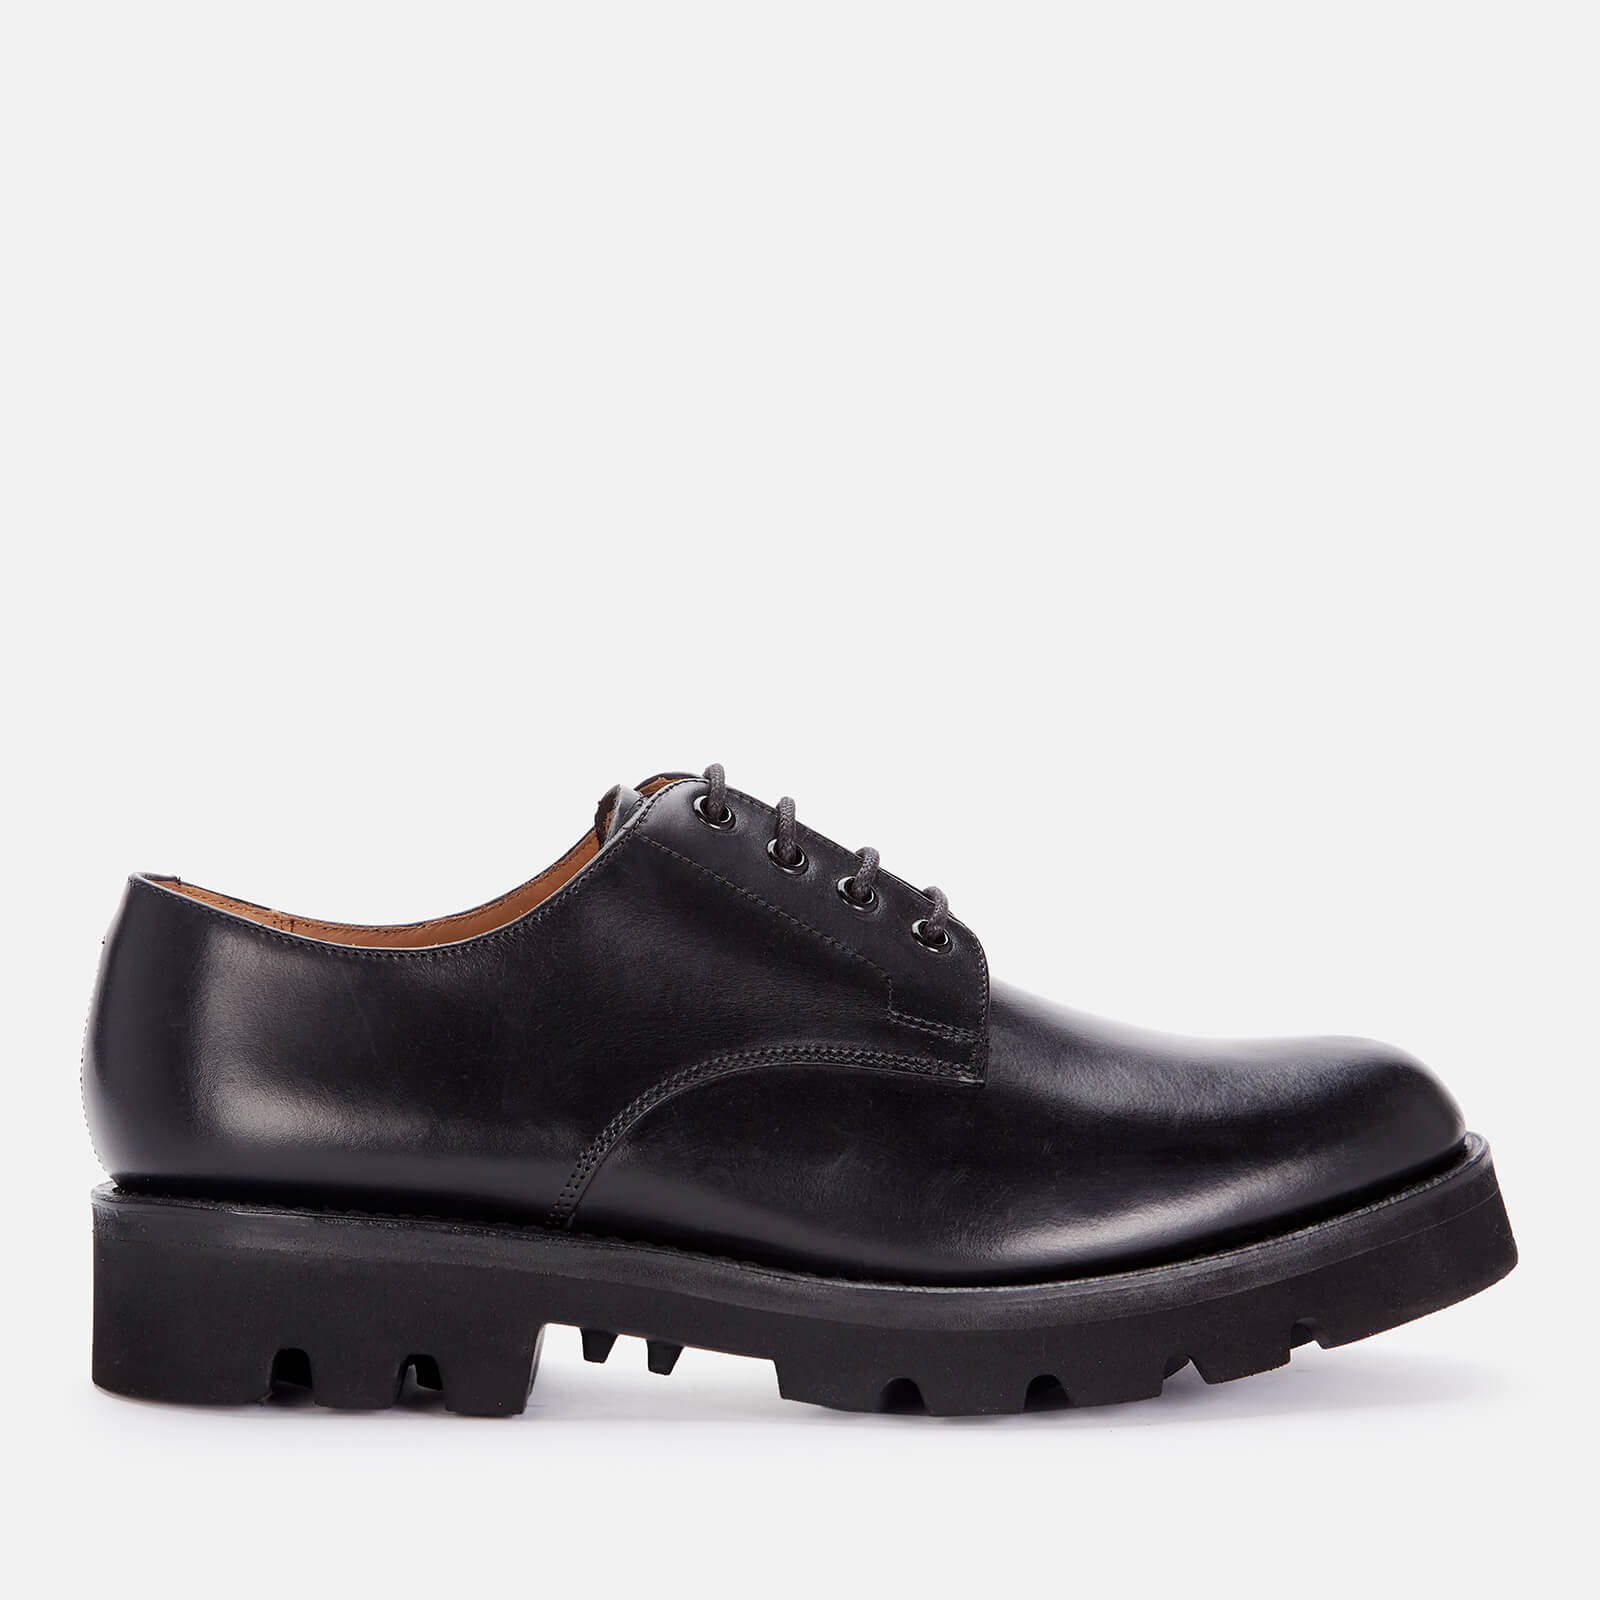 Grenson Men's Landon Leather Derby Shoes - Black - UK 10